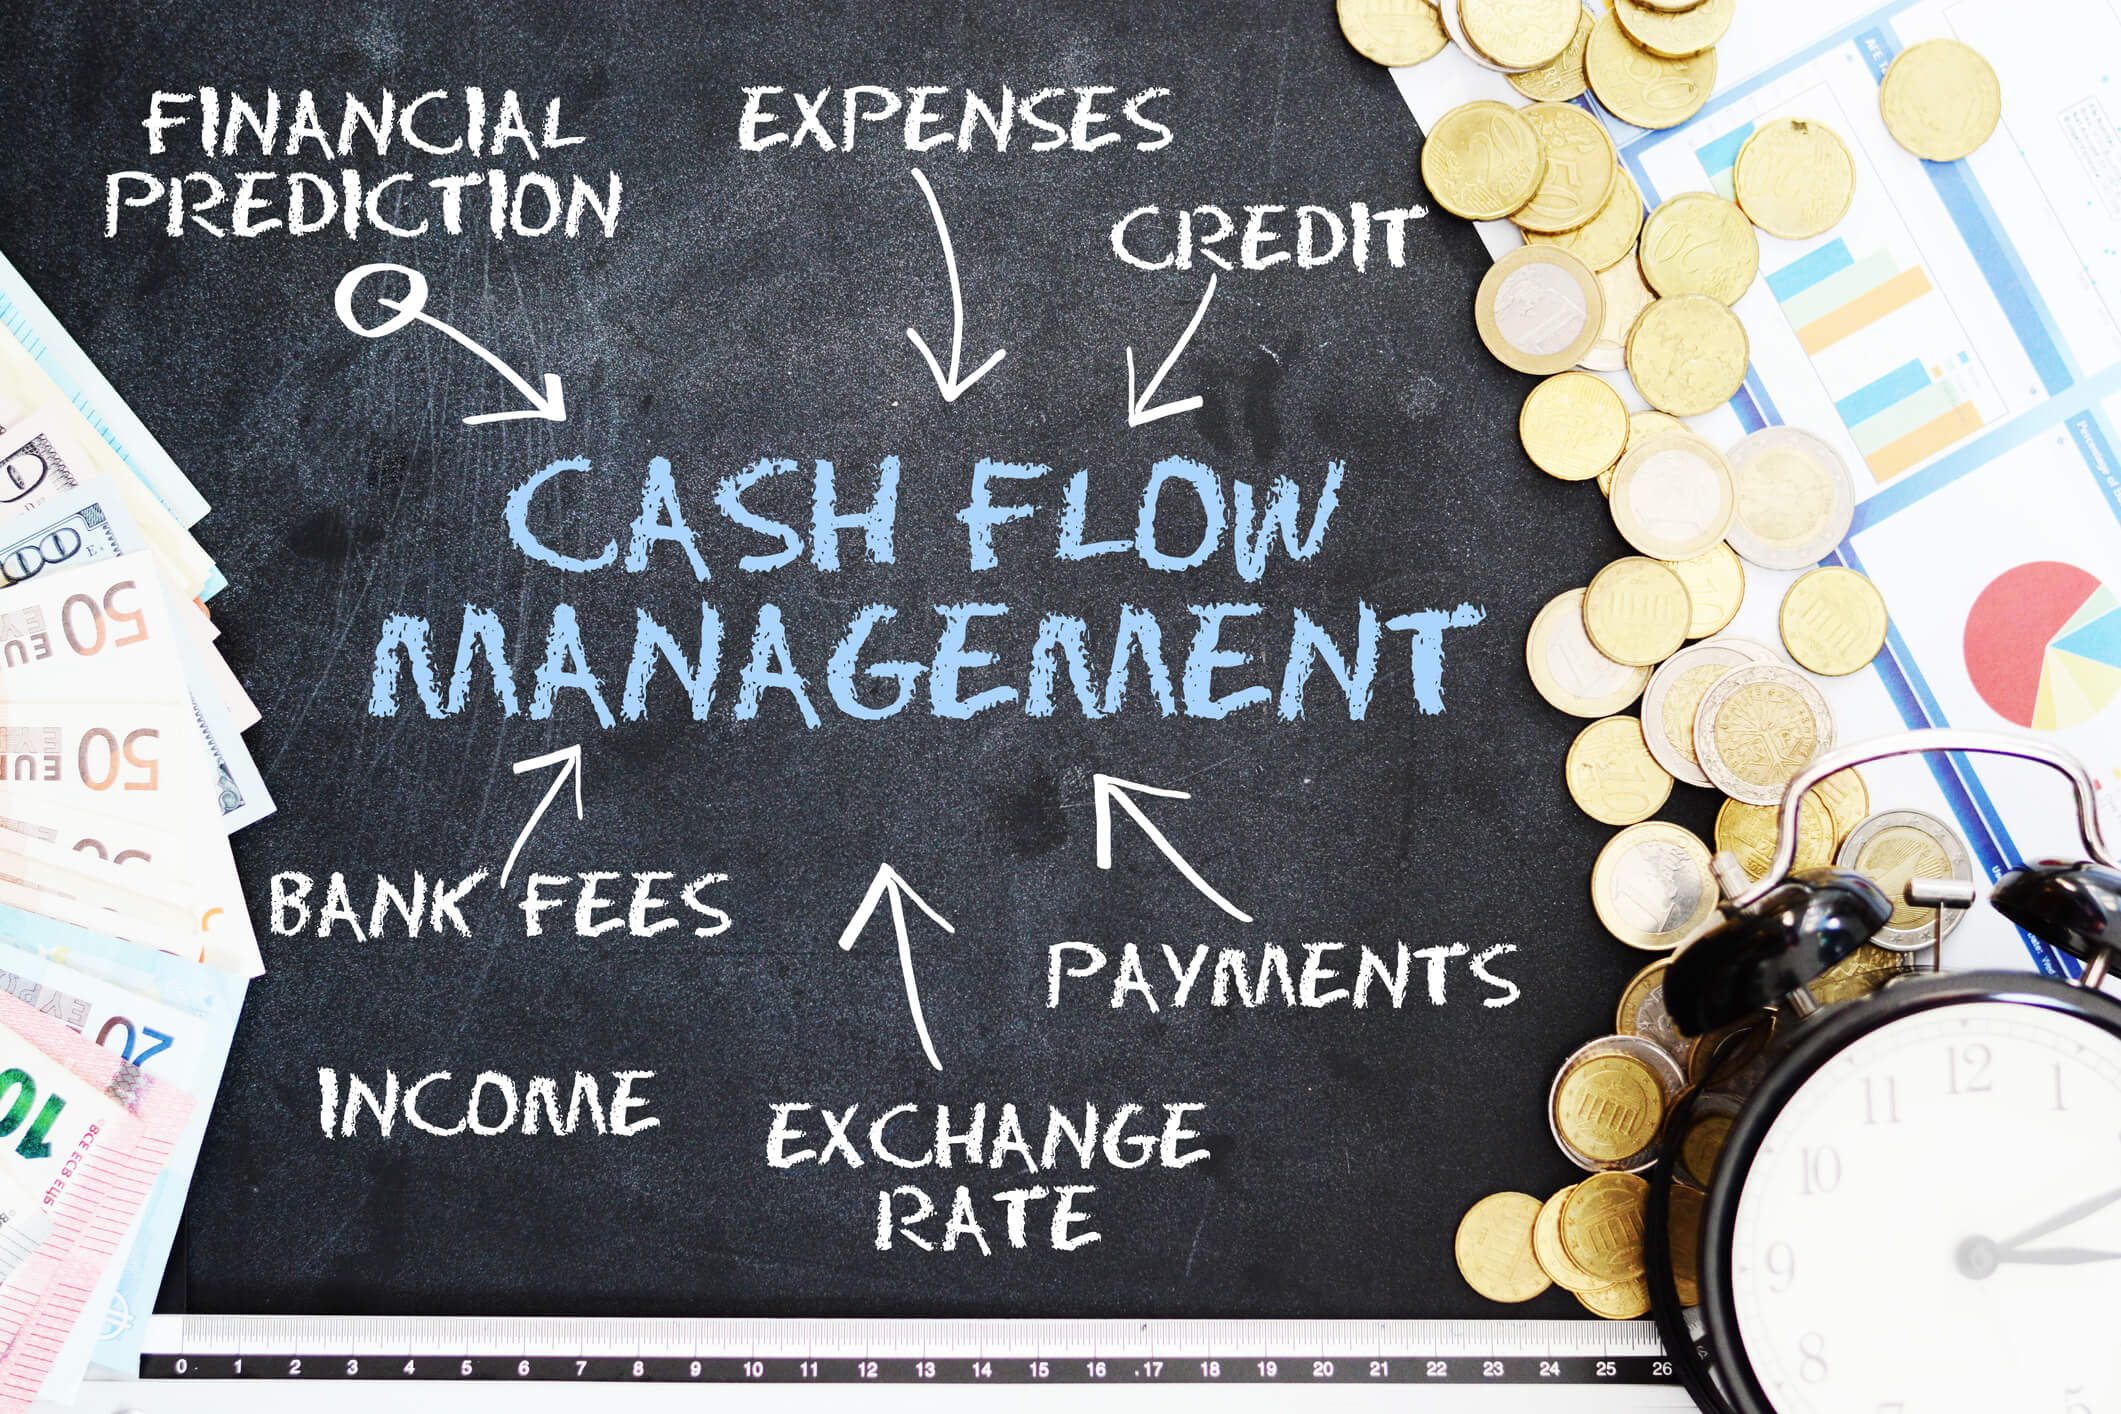 Cash flow management - Complete Controller